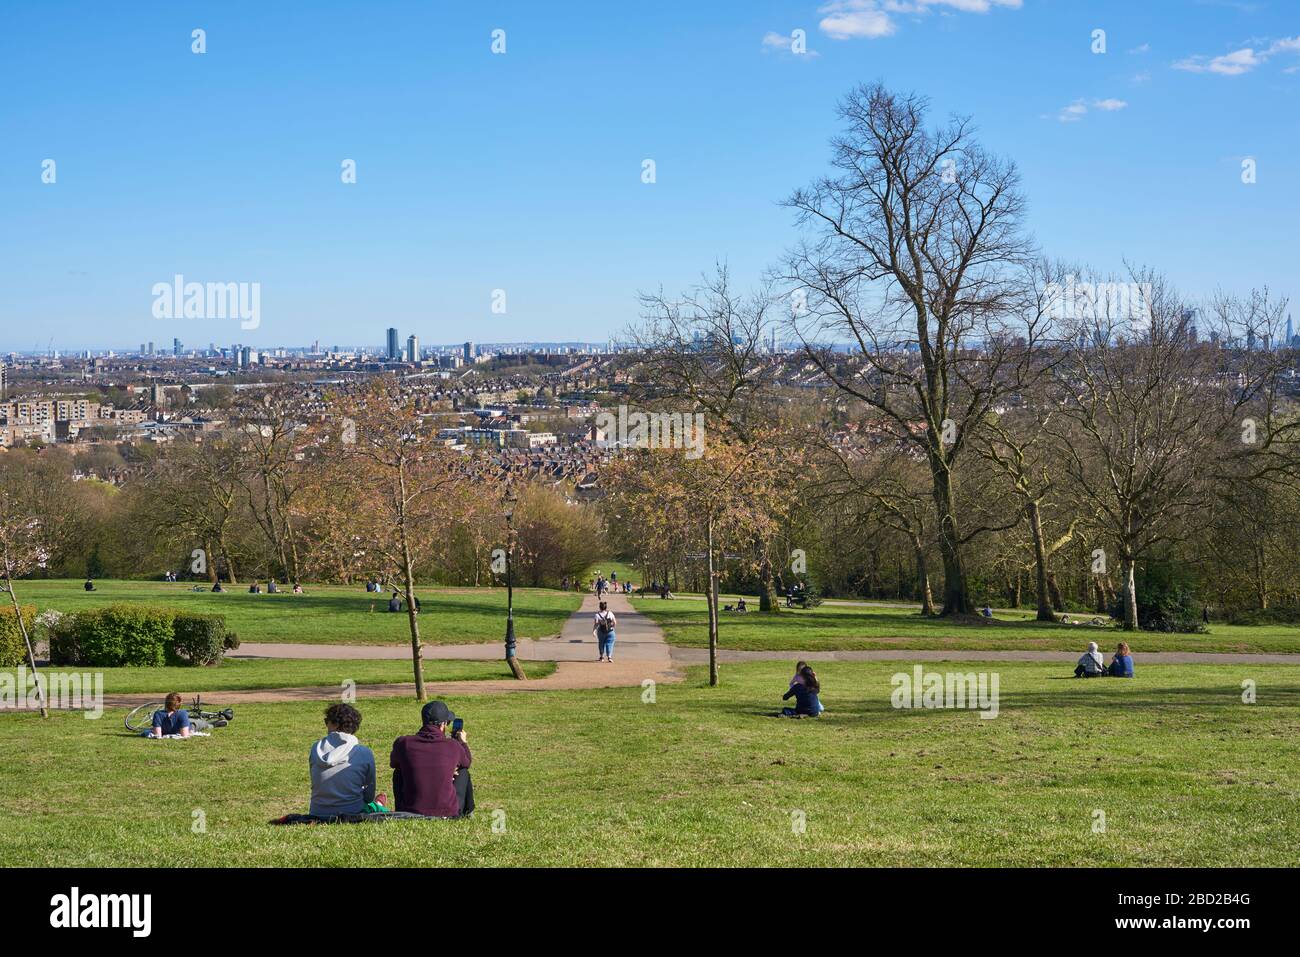 Alexandra Park, au nord de Londres, au Royaume-Uni, pendant le verrouillage du coronavirus, avec des gens pratiquant la distanciation sociale Banque D'Images